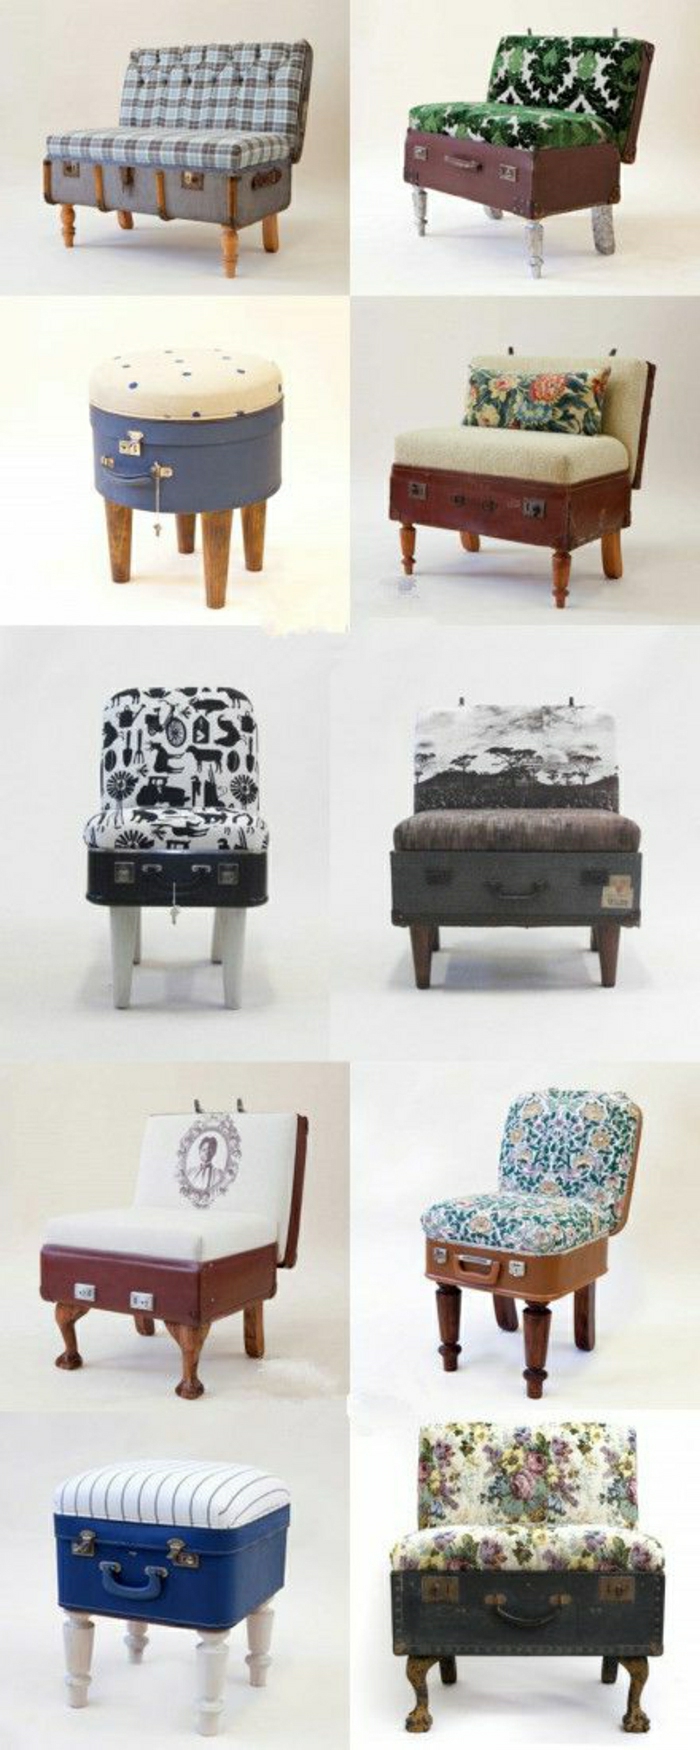 Valises-vintage-mobilier-originale-transformation-valise-sofa-canapé